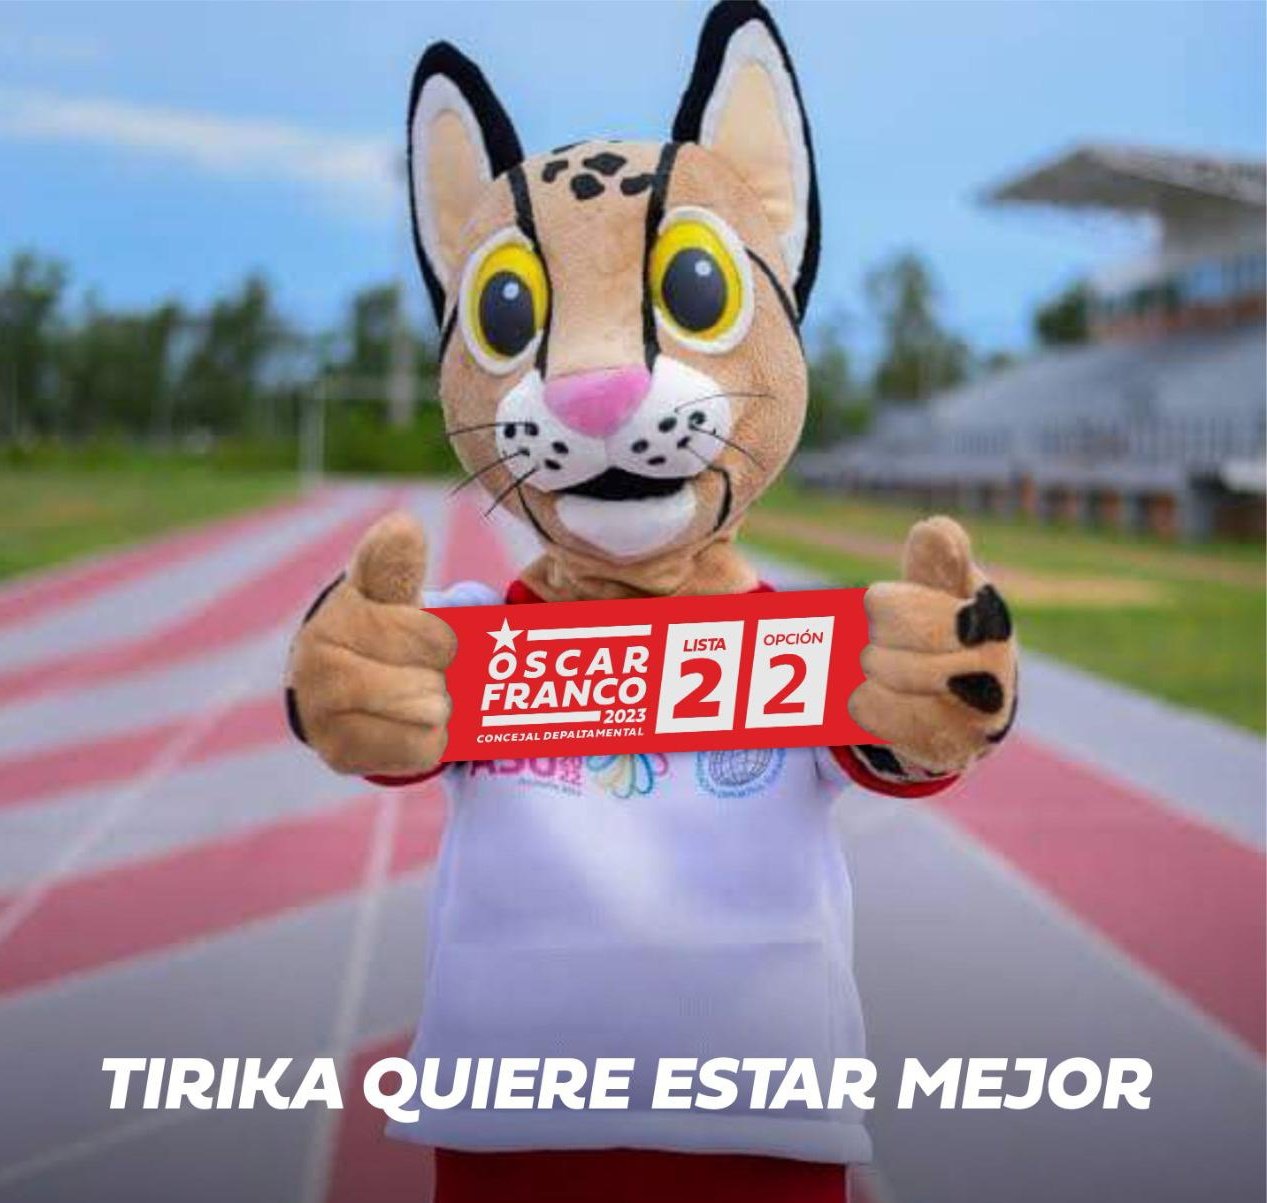 Ante la popularidad de la mascota de los Juegos Odesur, es utilizado como campaña política. Foto: Gentileza.